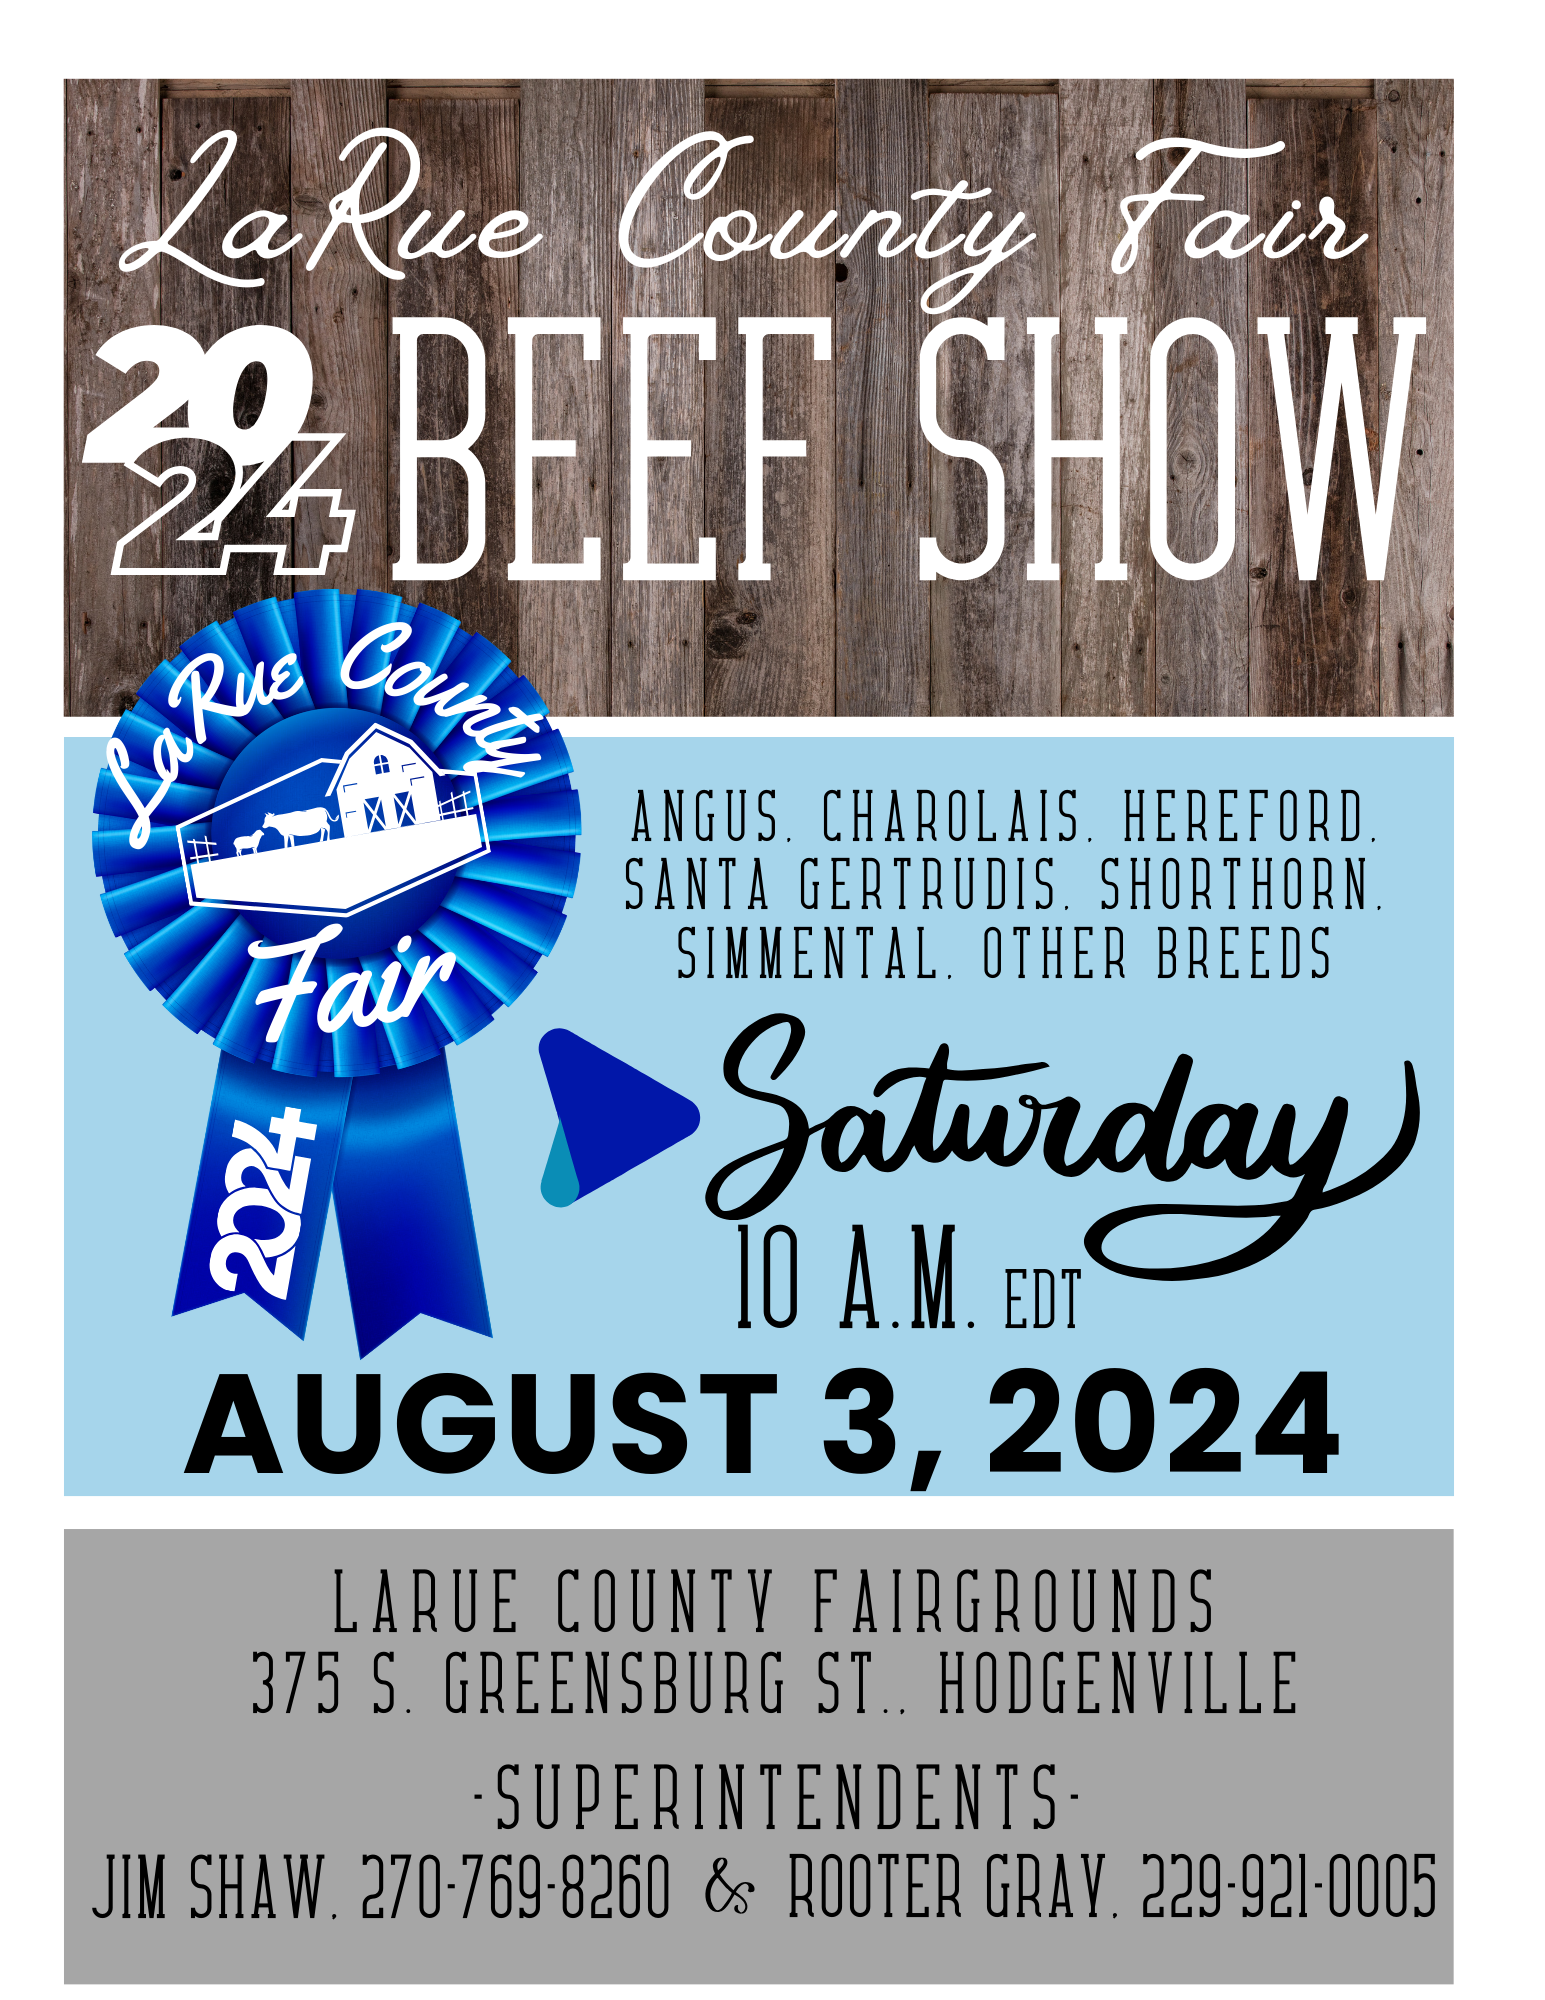 Beef Show flyer info